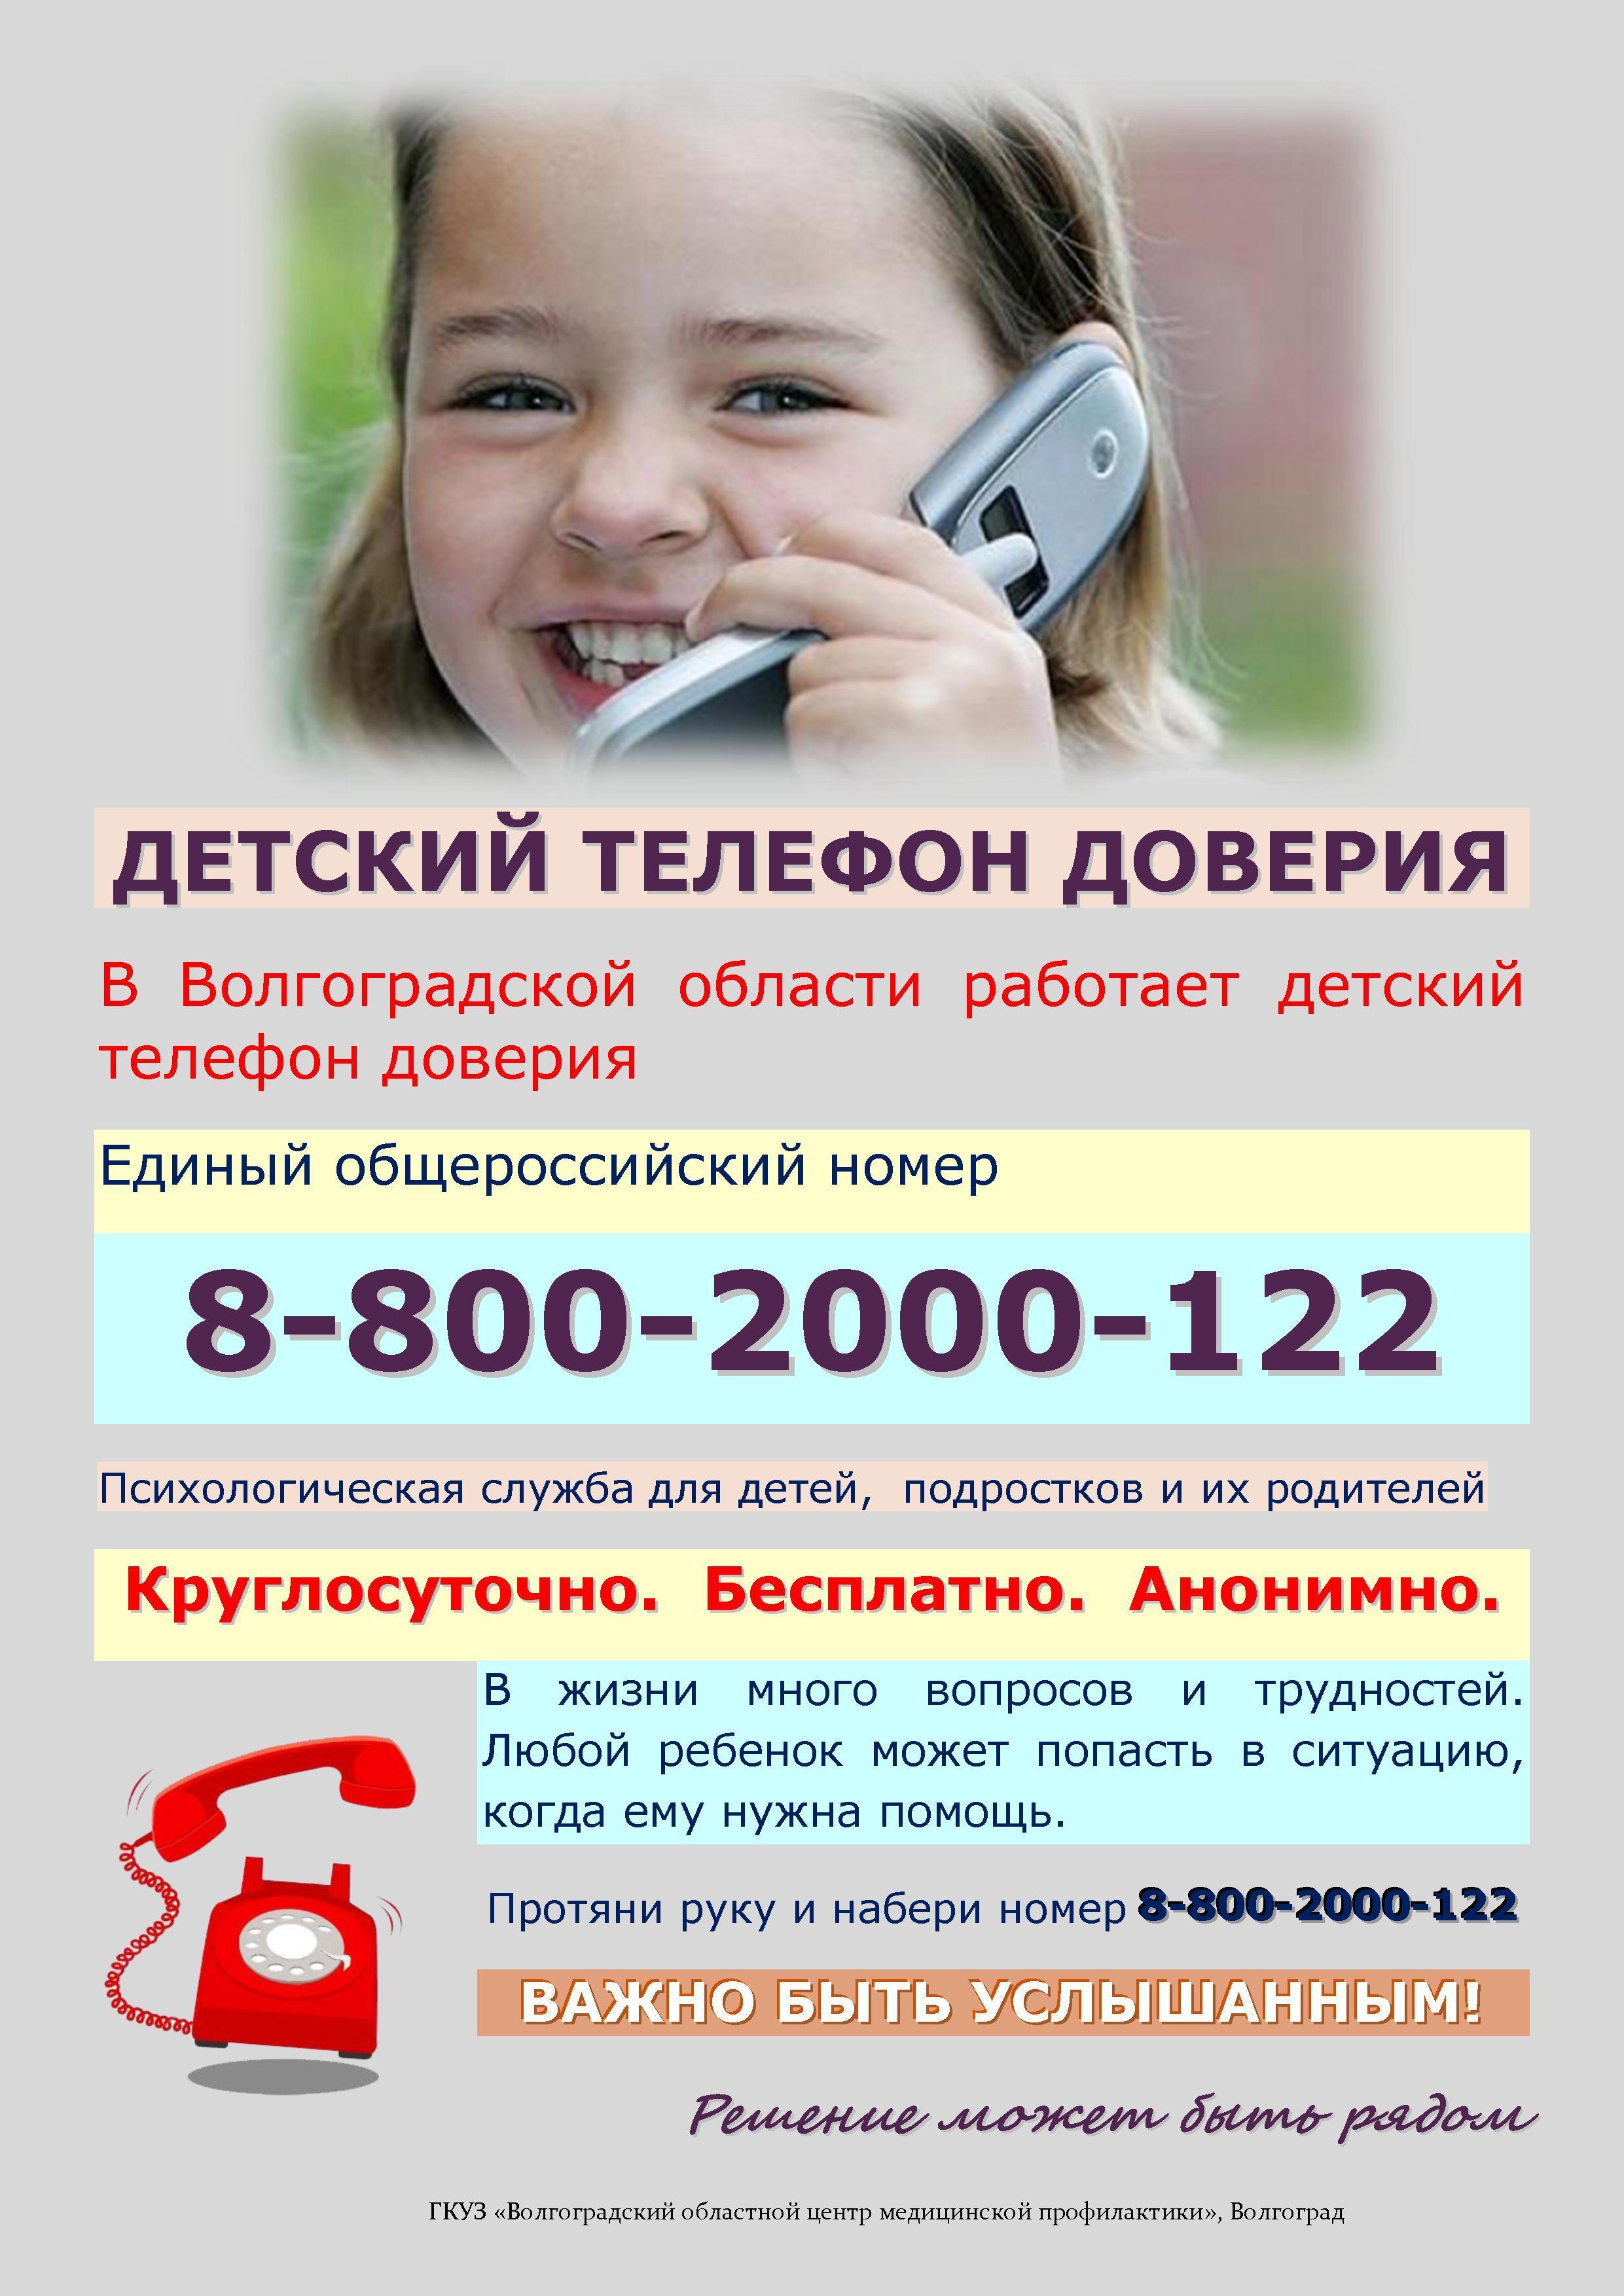 Телефон доверия форум. Телефон доверия. Детский телефон доверия. Телефон доверия для детей подростков и их родителей. Номер телефона доверия для детей.